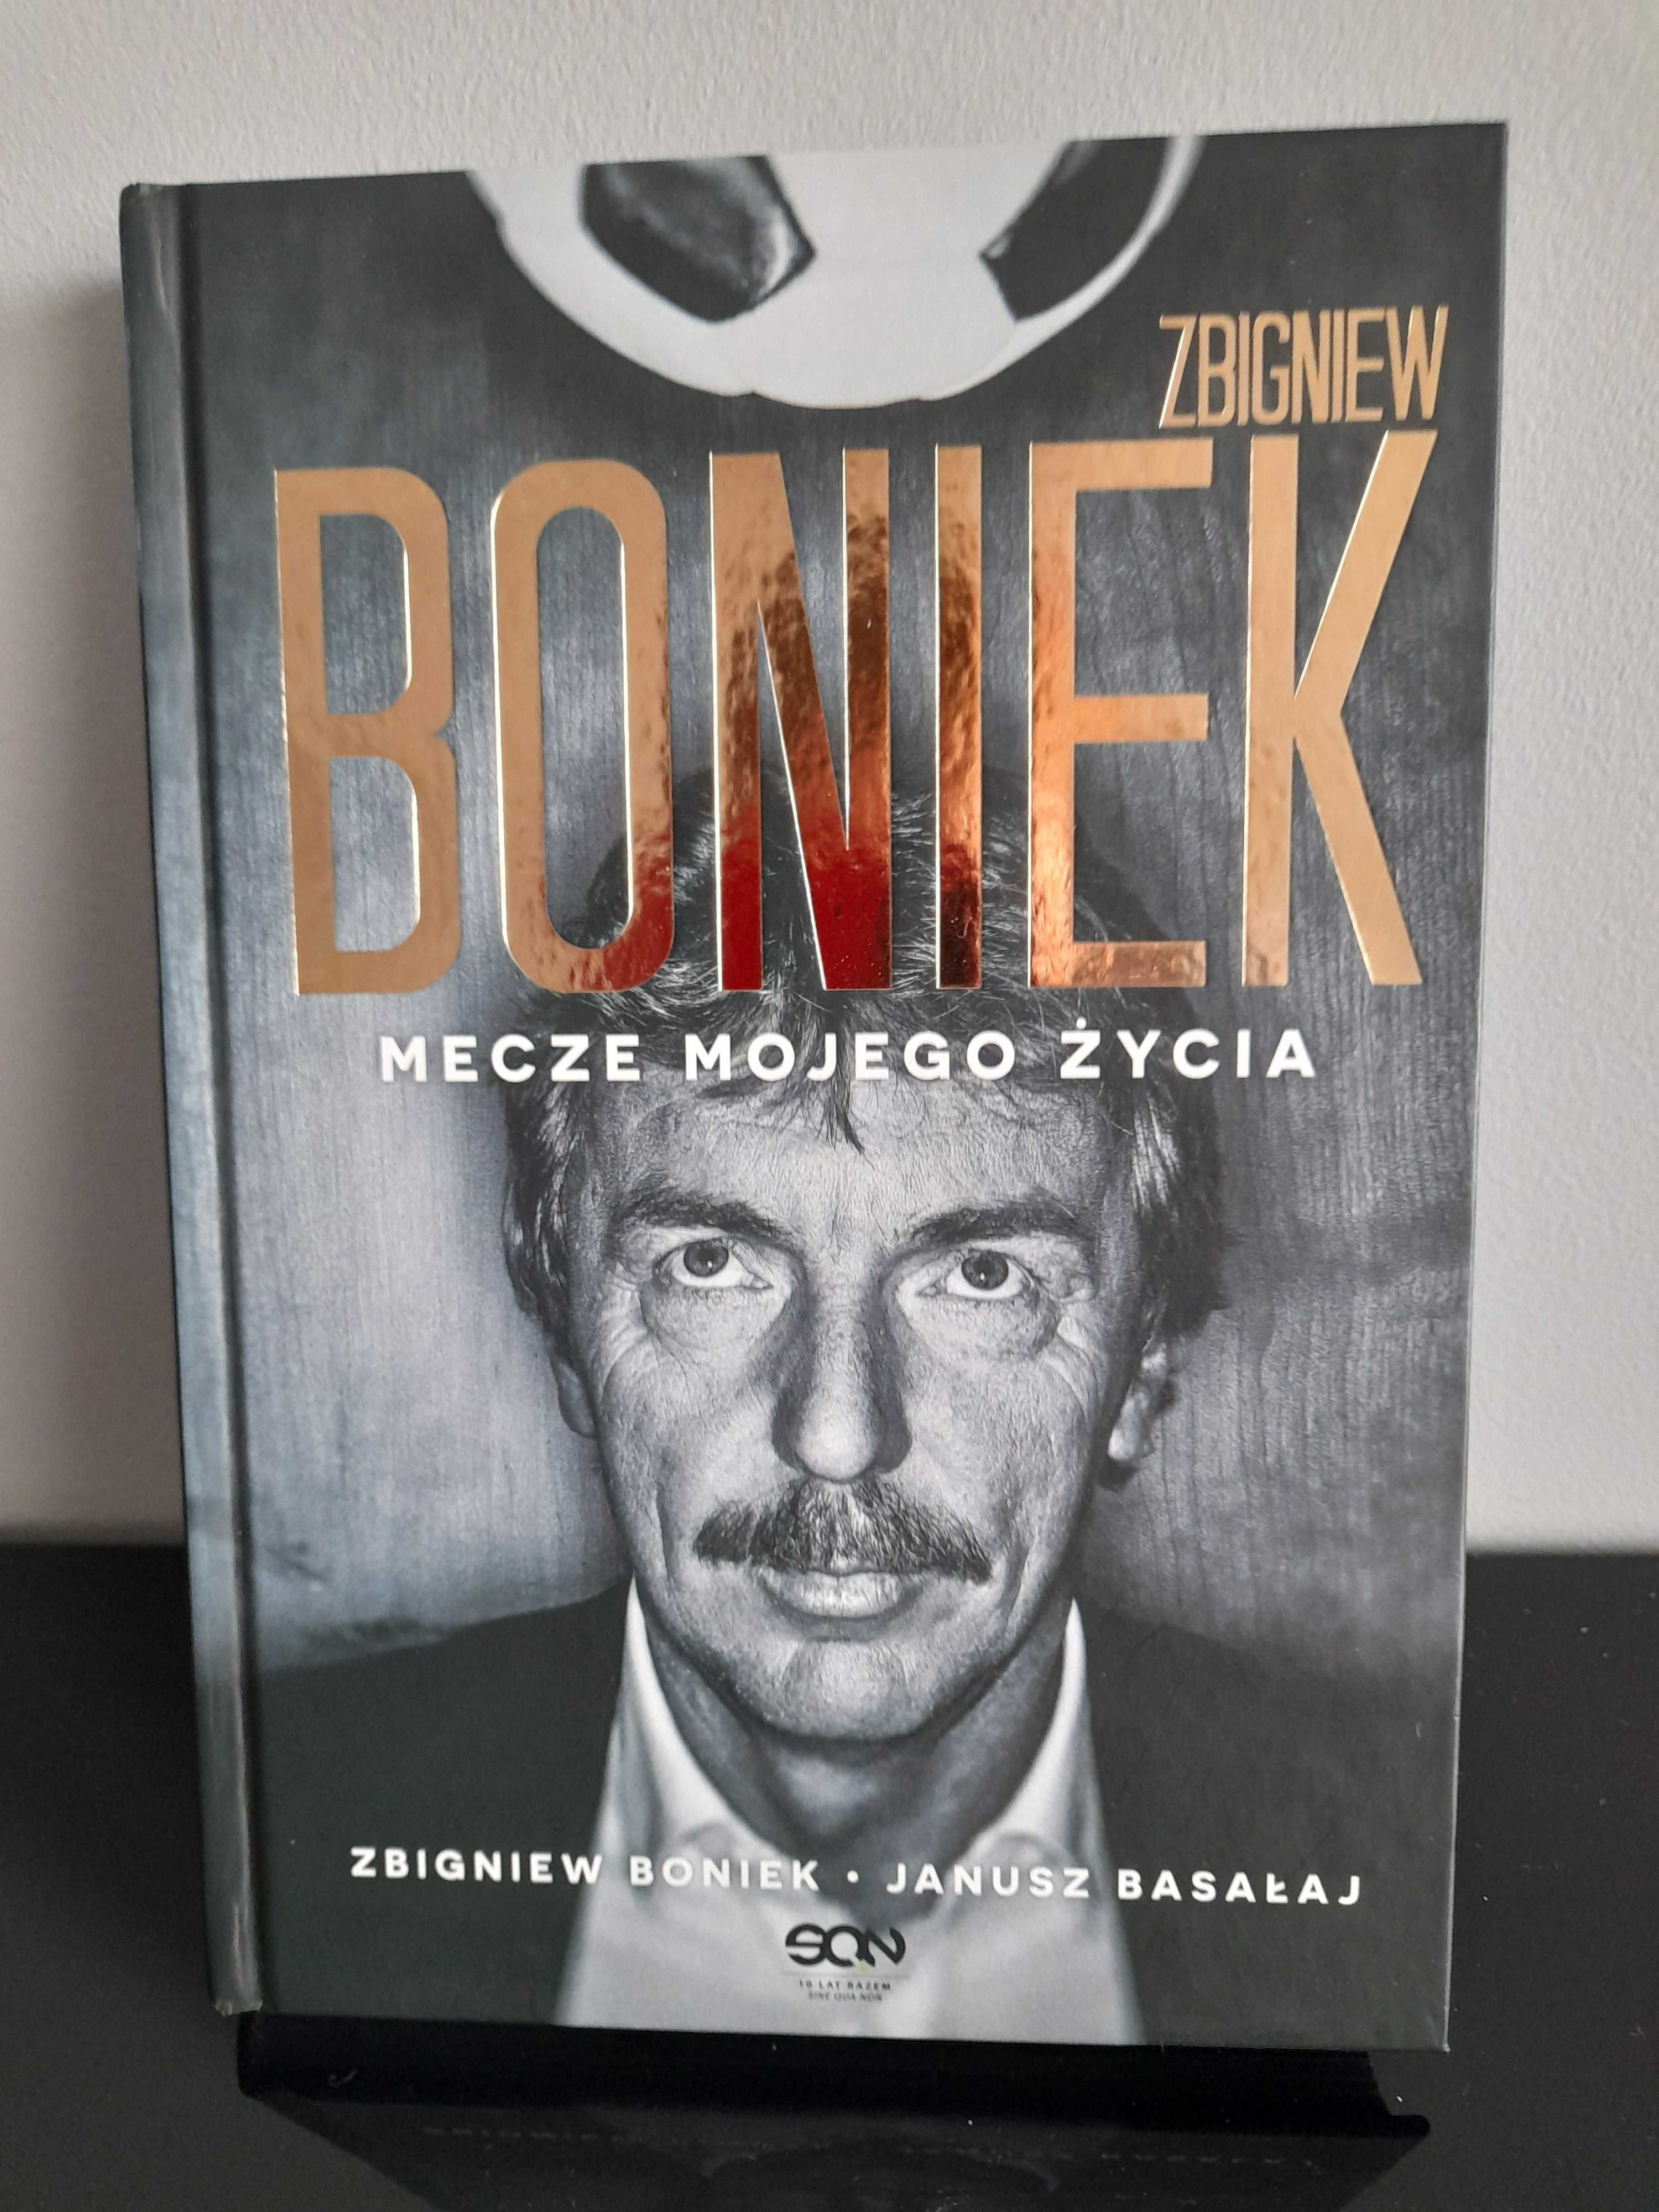 Książka Zbigniew Boniek